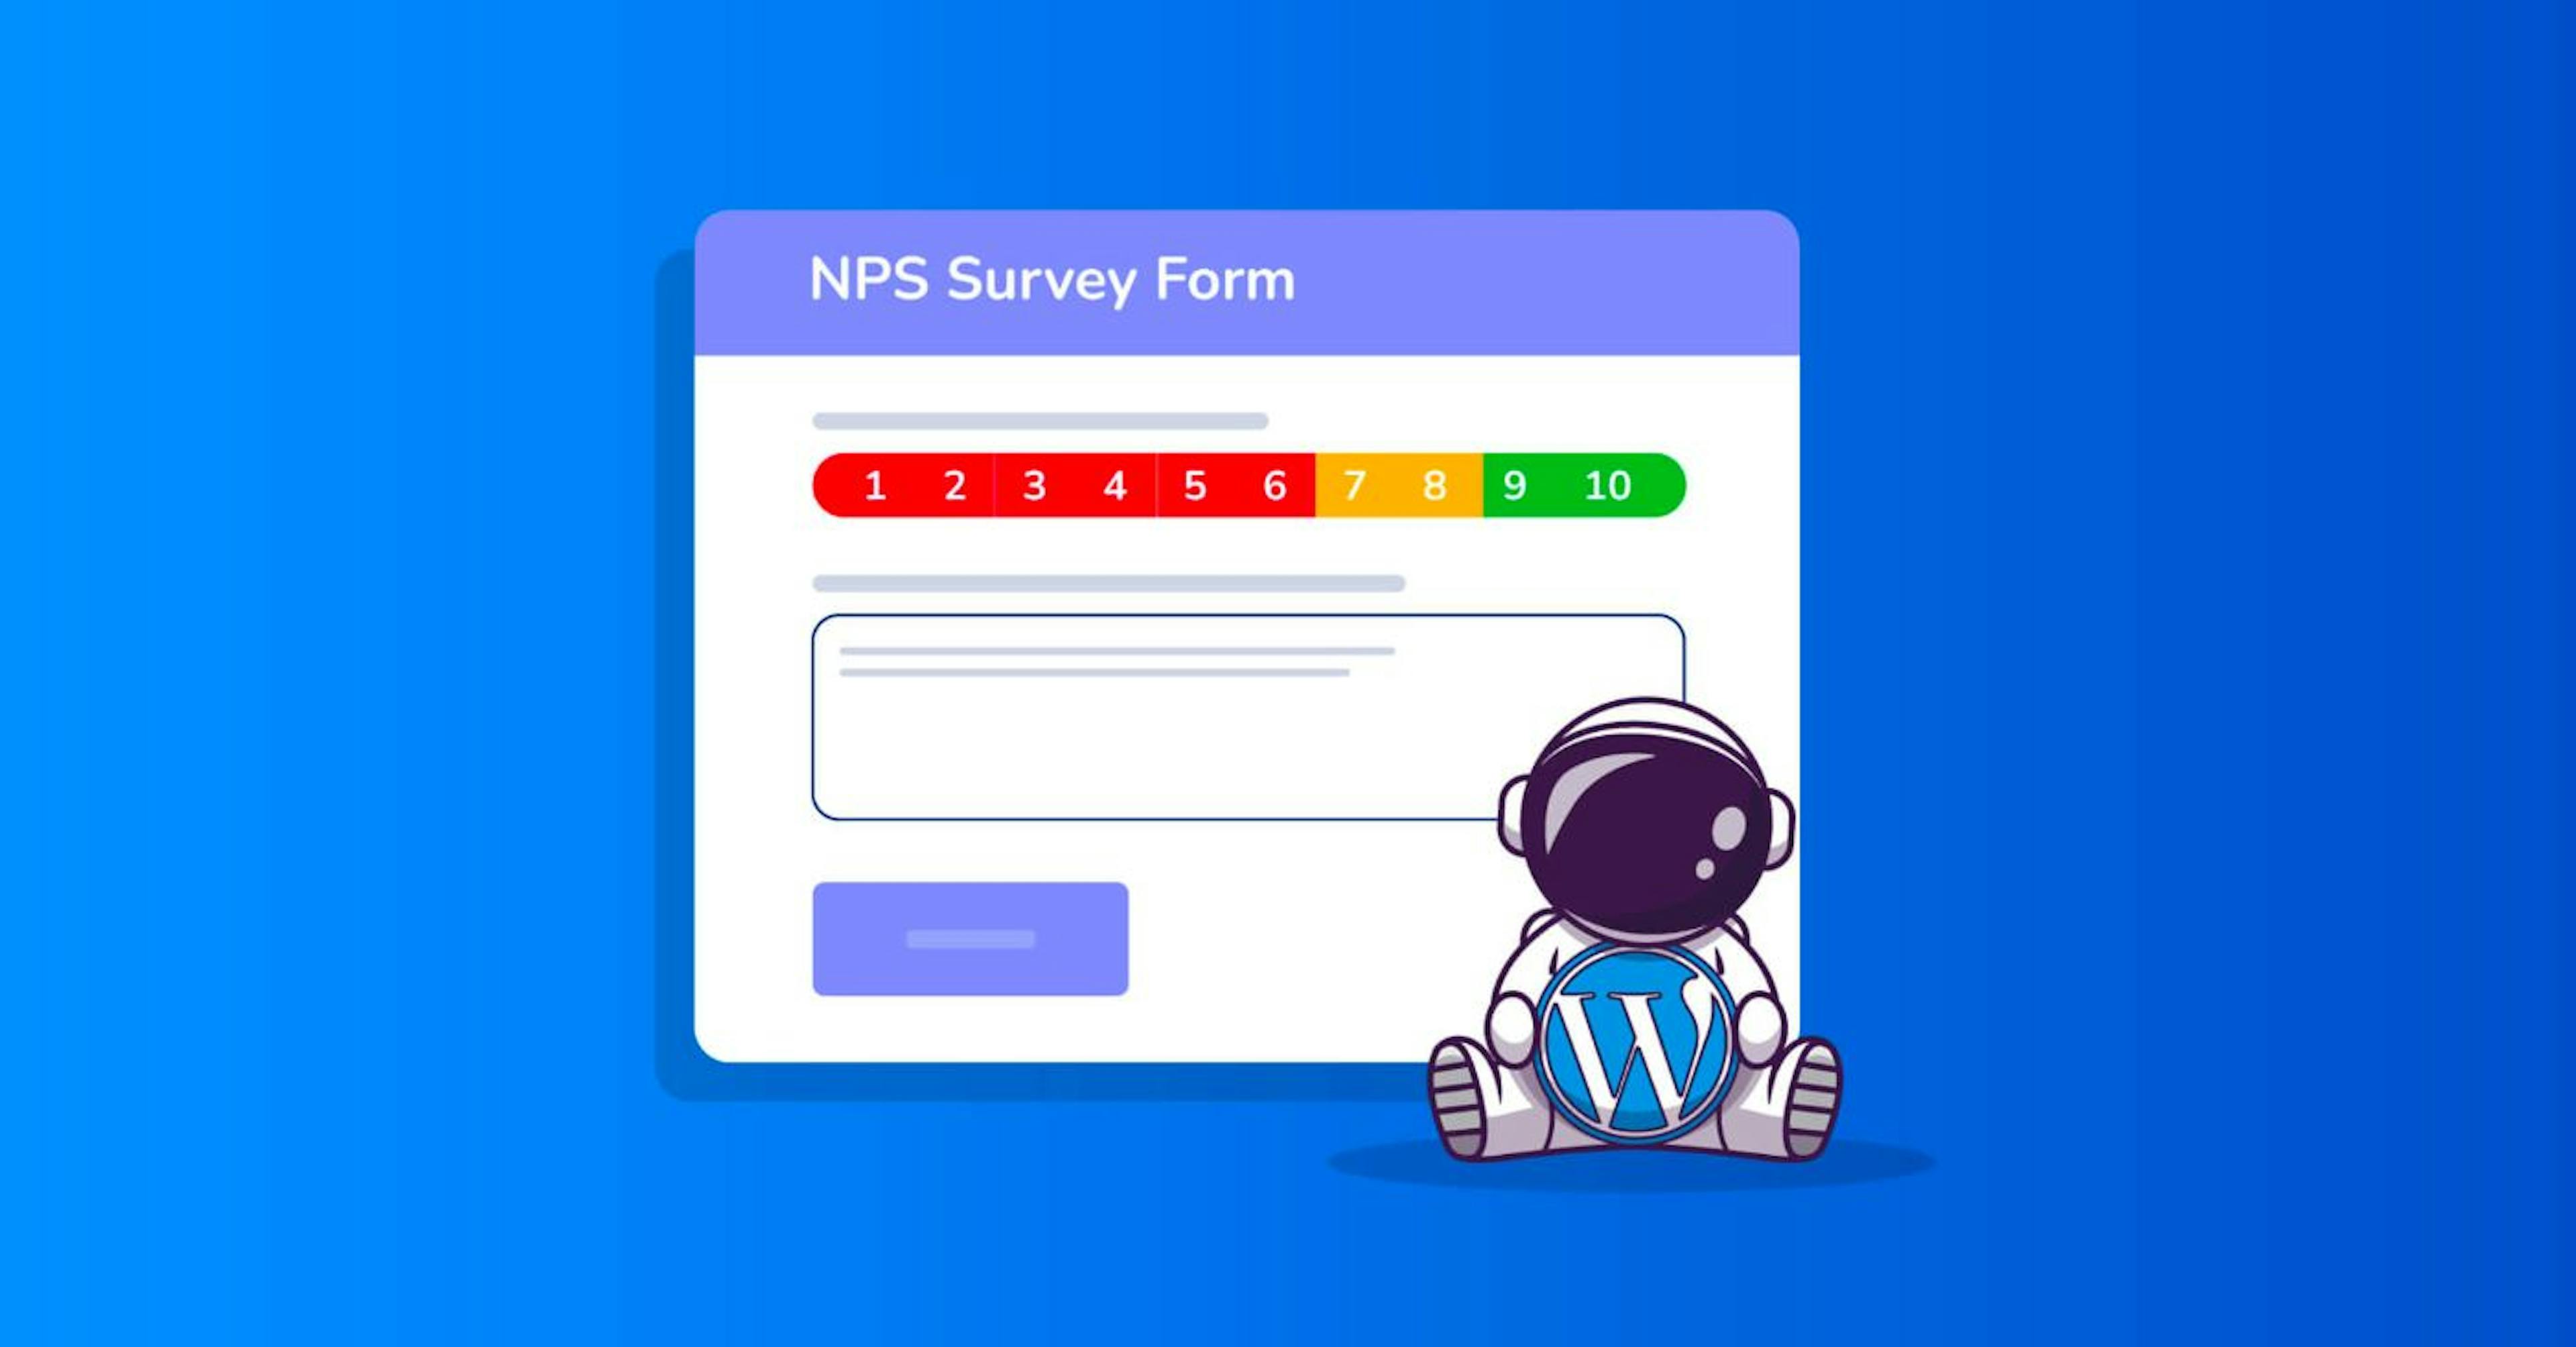 NPS formu, 0'dan 10'a kadar bir derecelendirme ve yorum veya geri bildirim için bir metin alanıyla şu şekilde görünebilir.